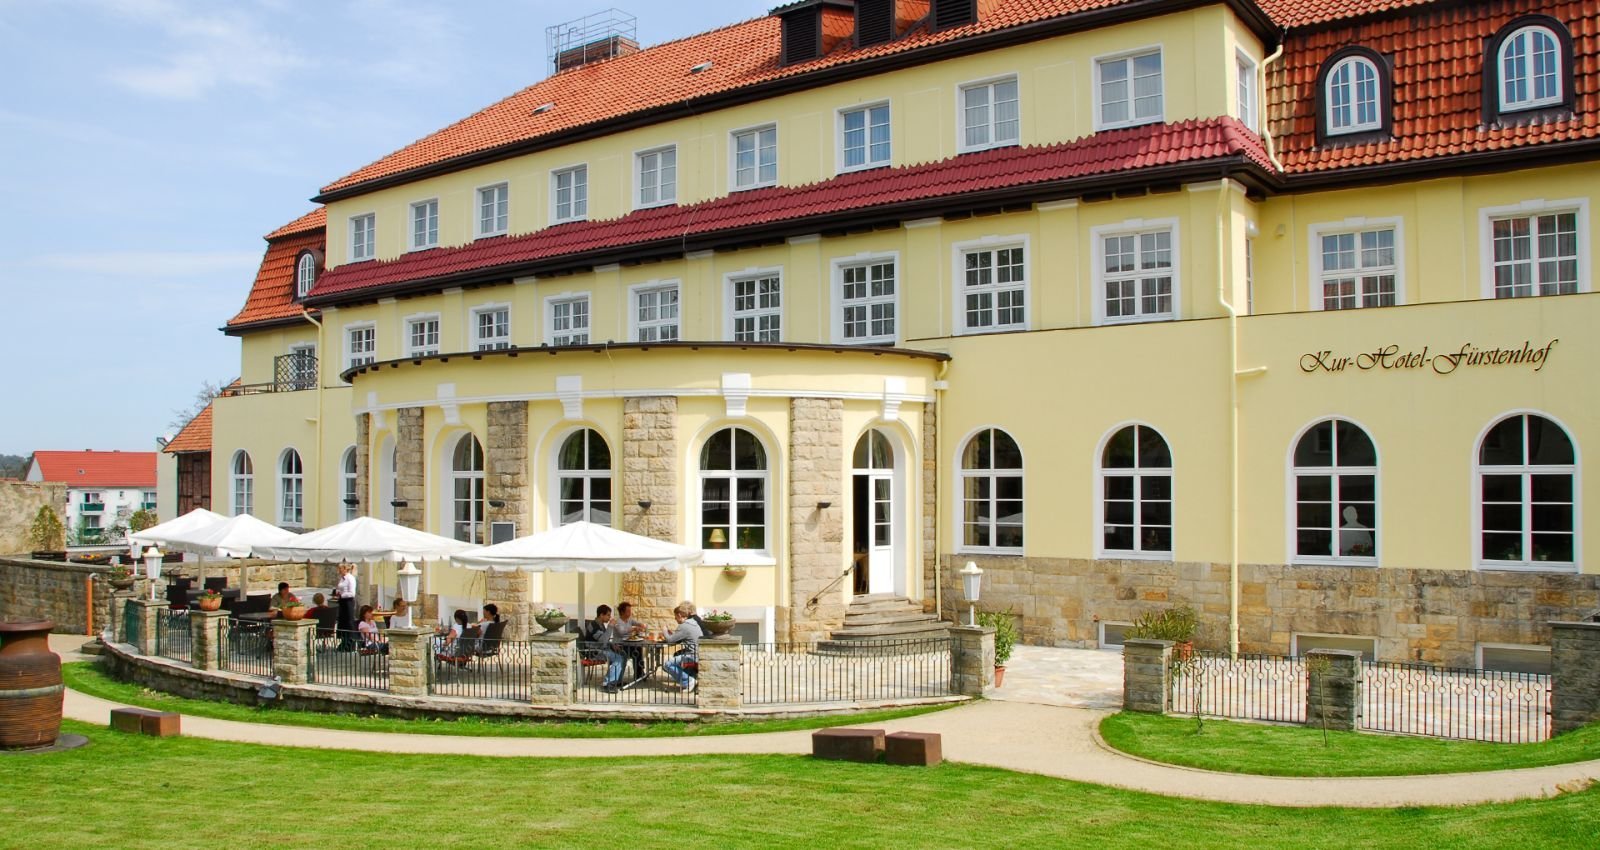 3 Tage Wanderpauschale Barocke Lebenslust – Kurhotel Fürstenhof (3.5 Sterne) in Blankenburg, Sachsen-Anhalt inkl. Frühstück